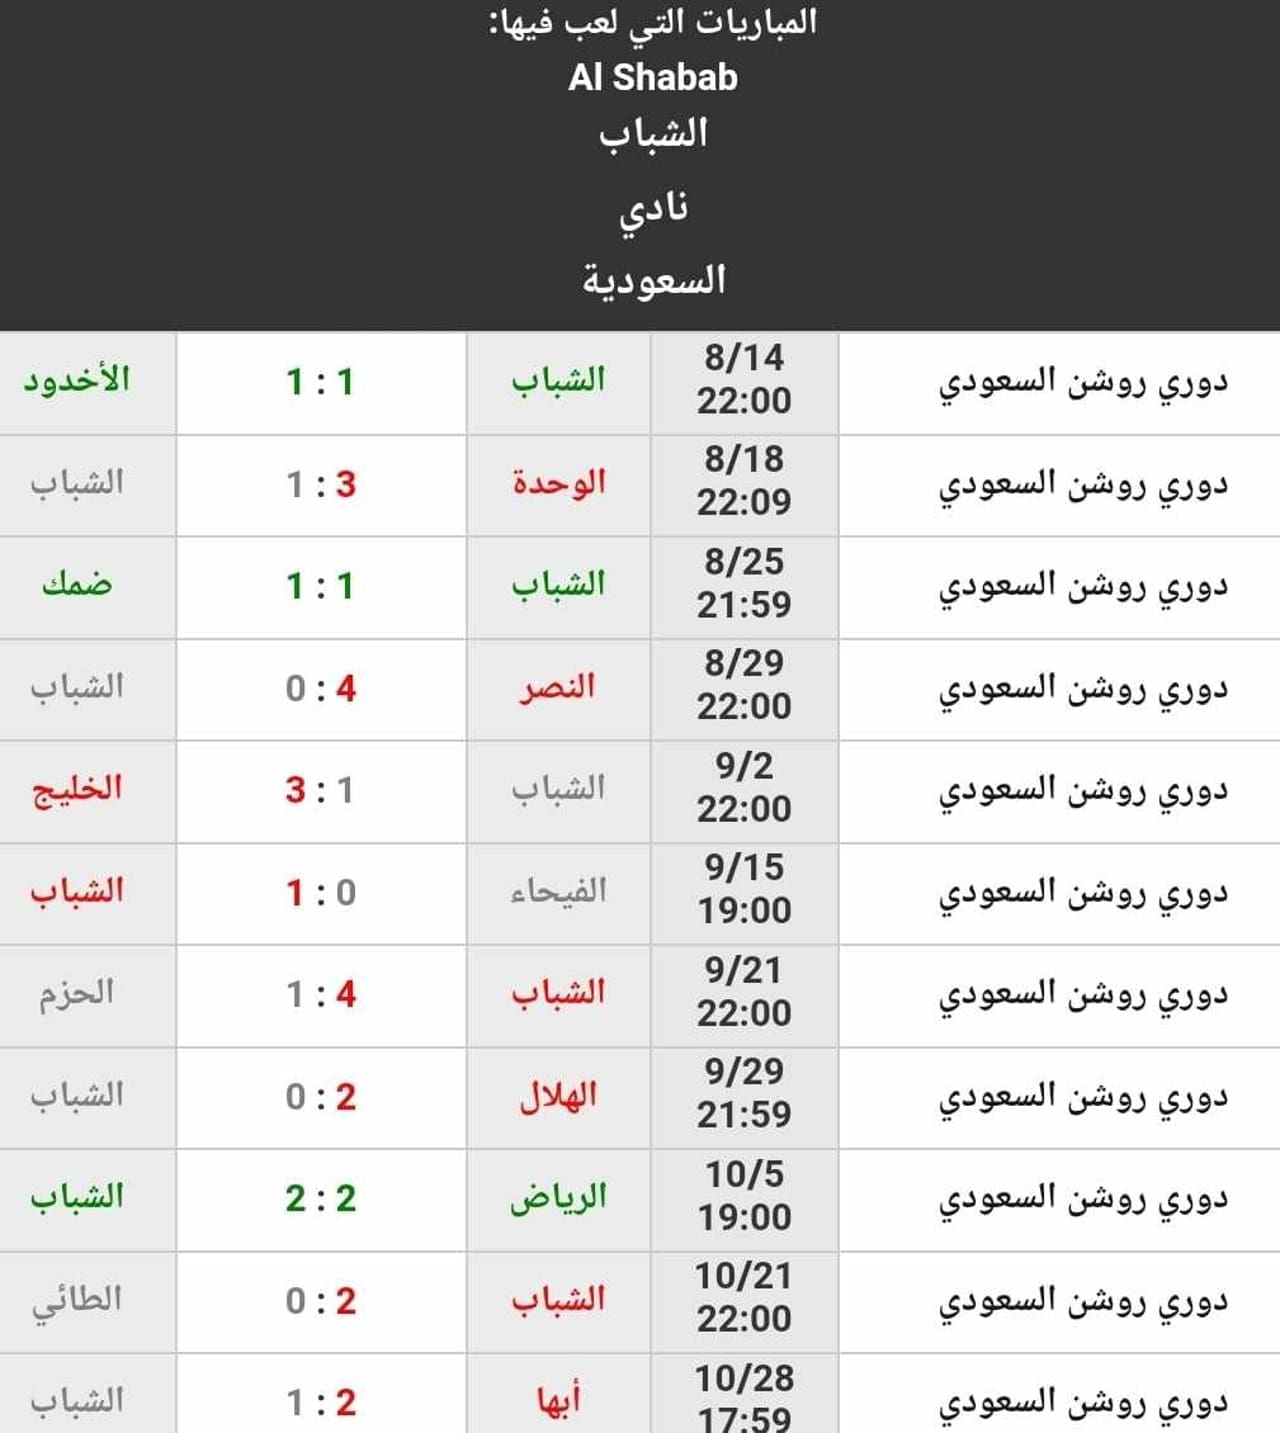 نتائج نادي الشباب حتى الجولة 11 من الدوري السعودي (المصدر. موقع كووورة)